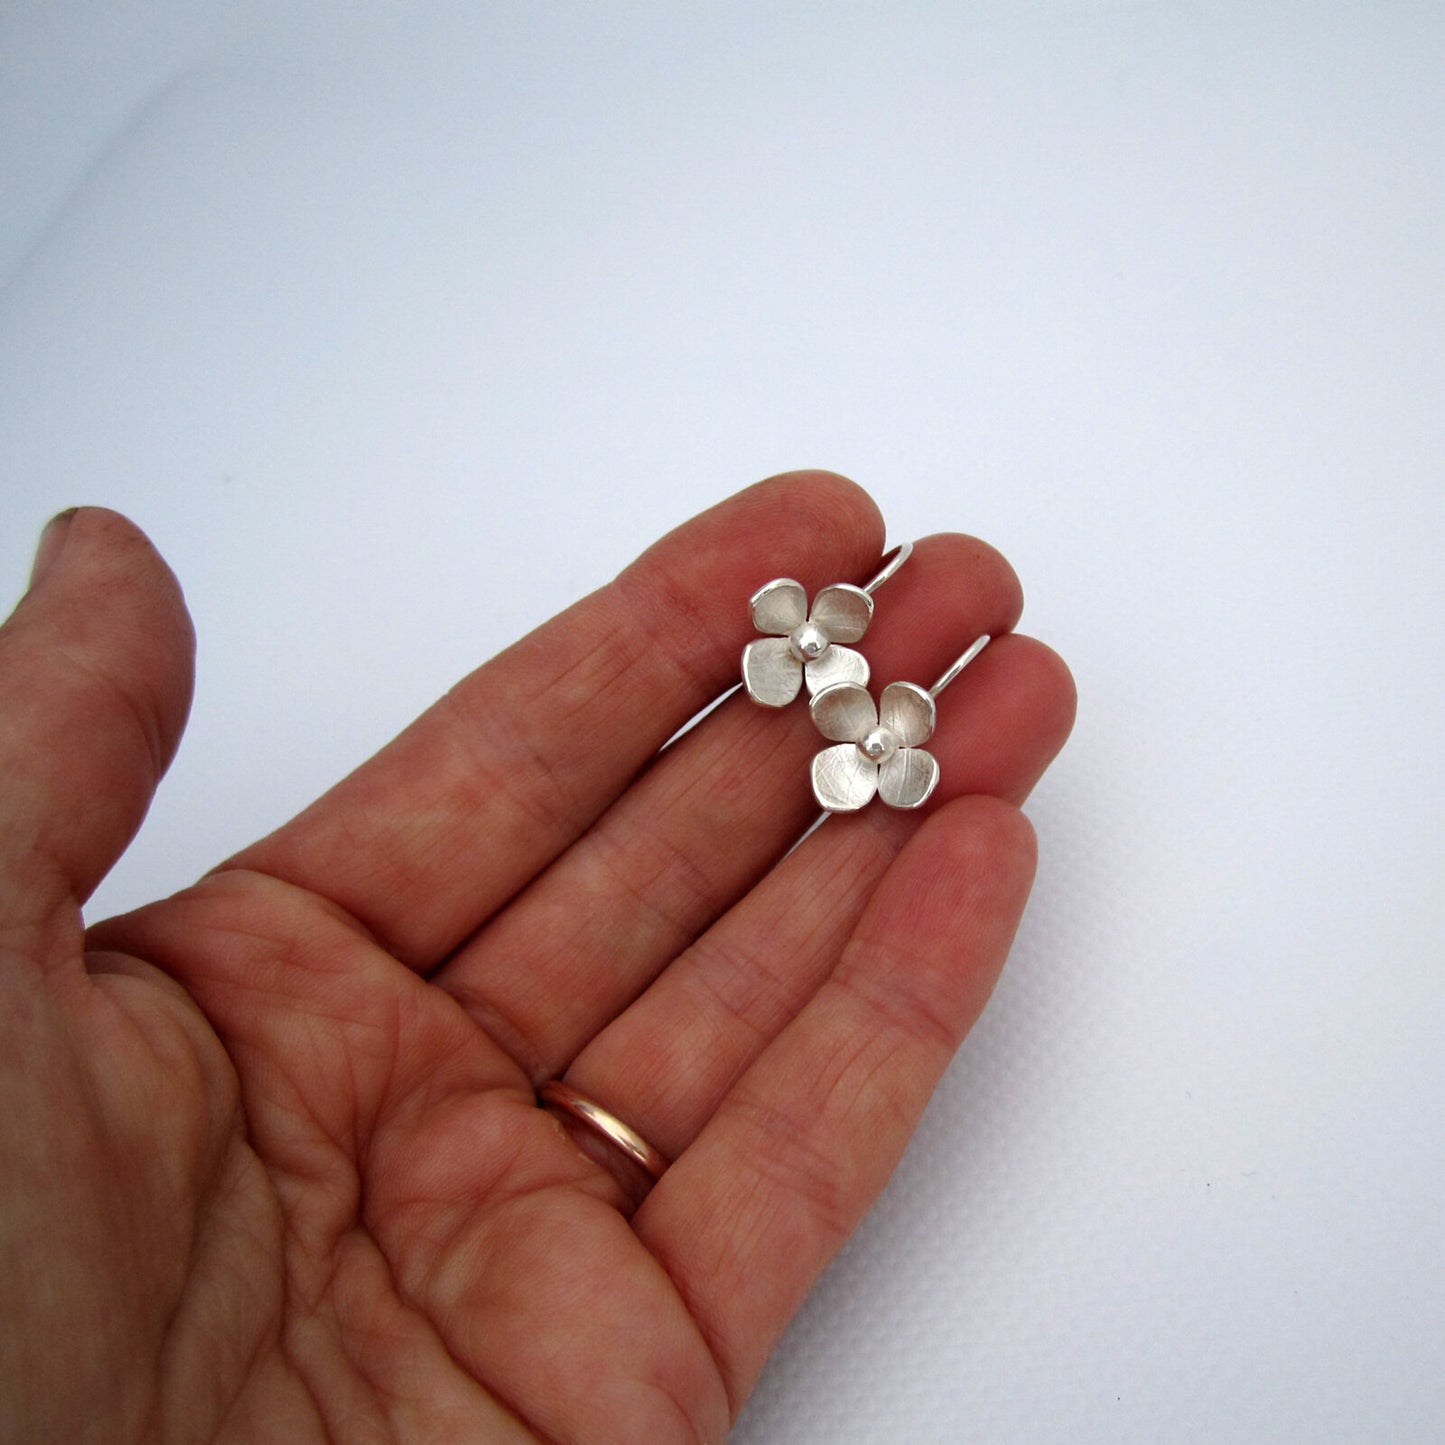 Hydrangea Earrings Small Sterling Silver